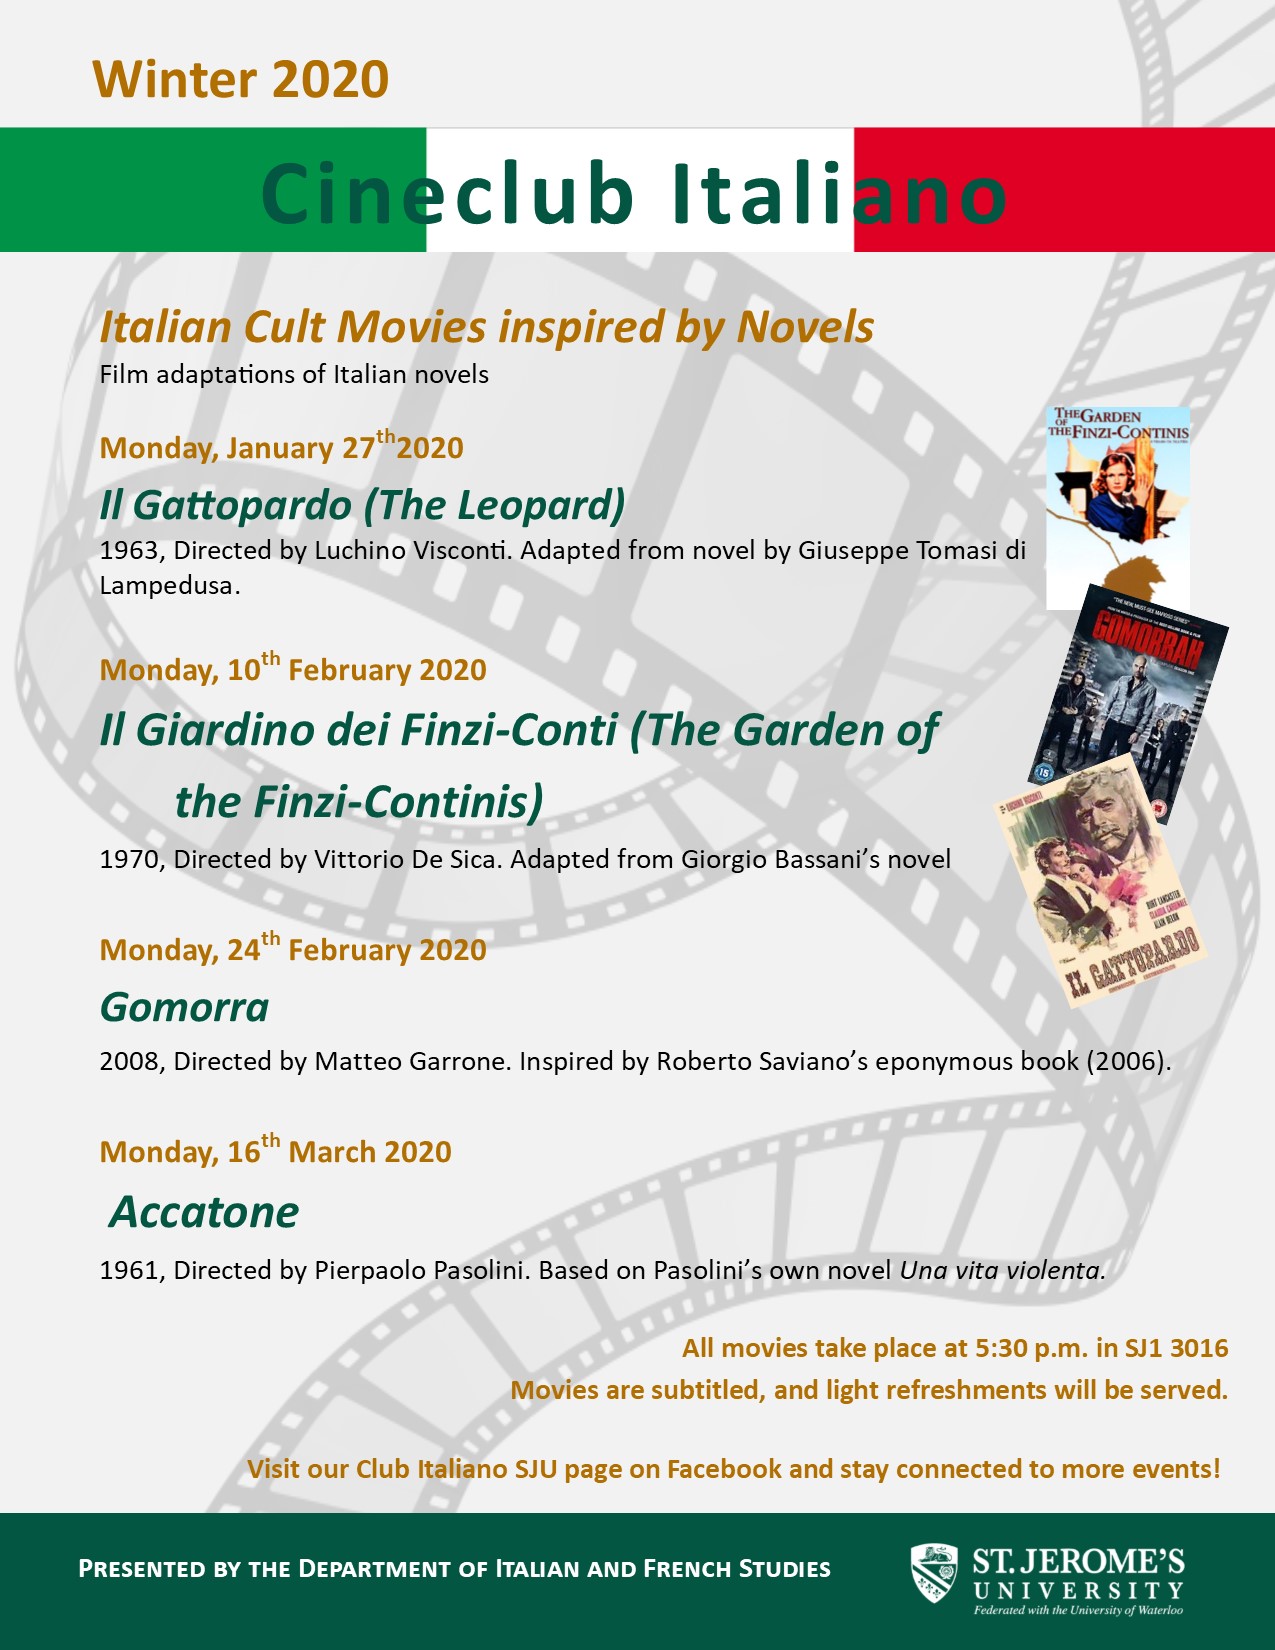 Poster - Cineclub Italiano Winter 2020